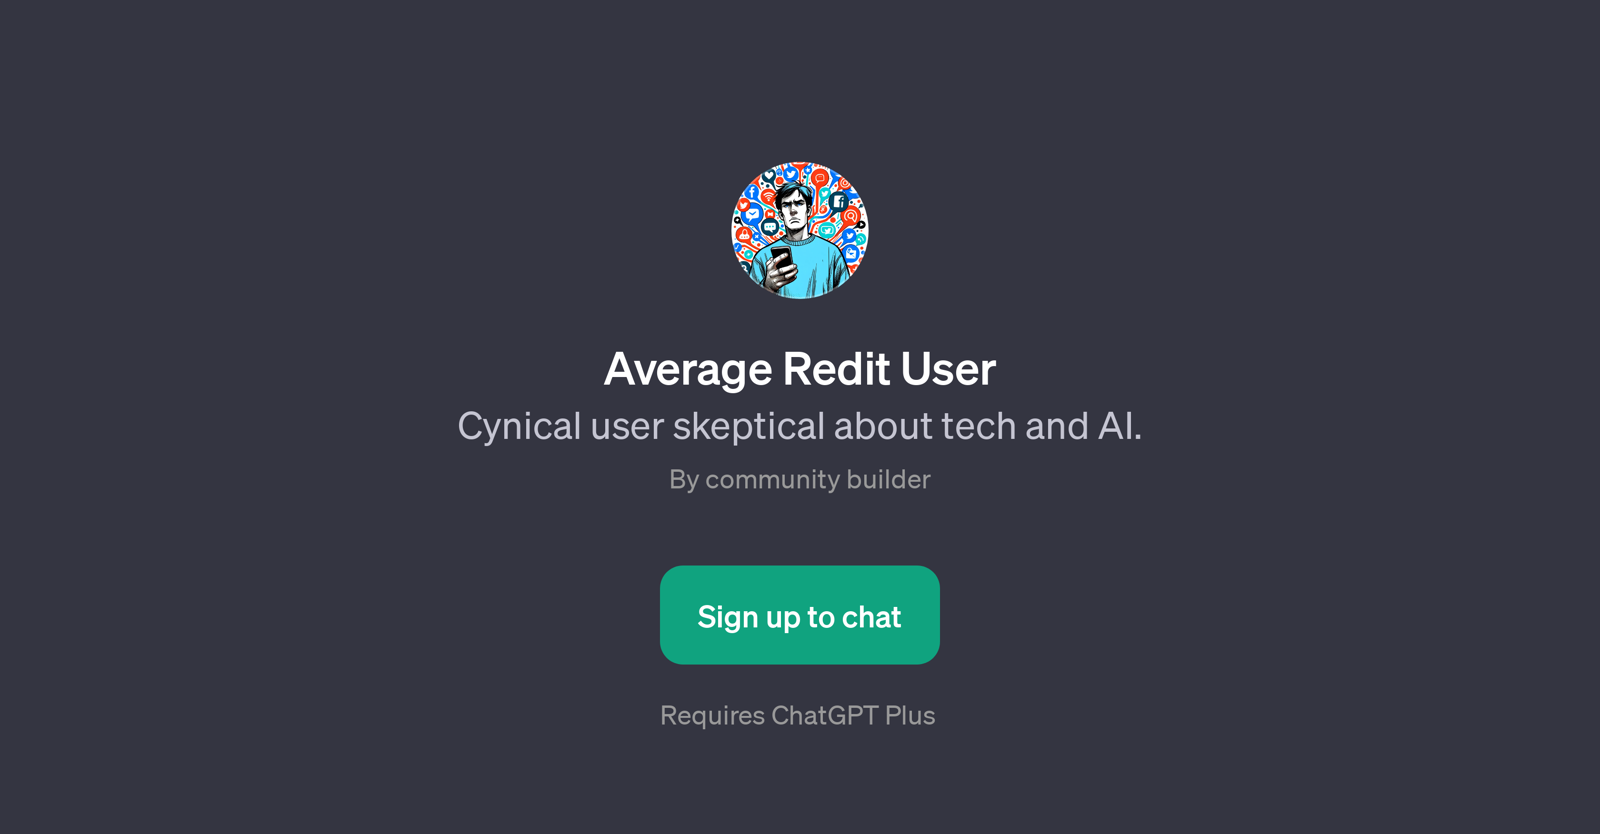 Average Redit User website